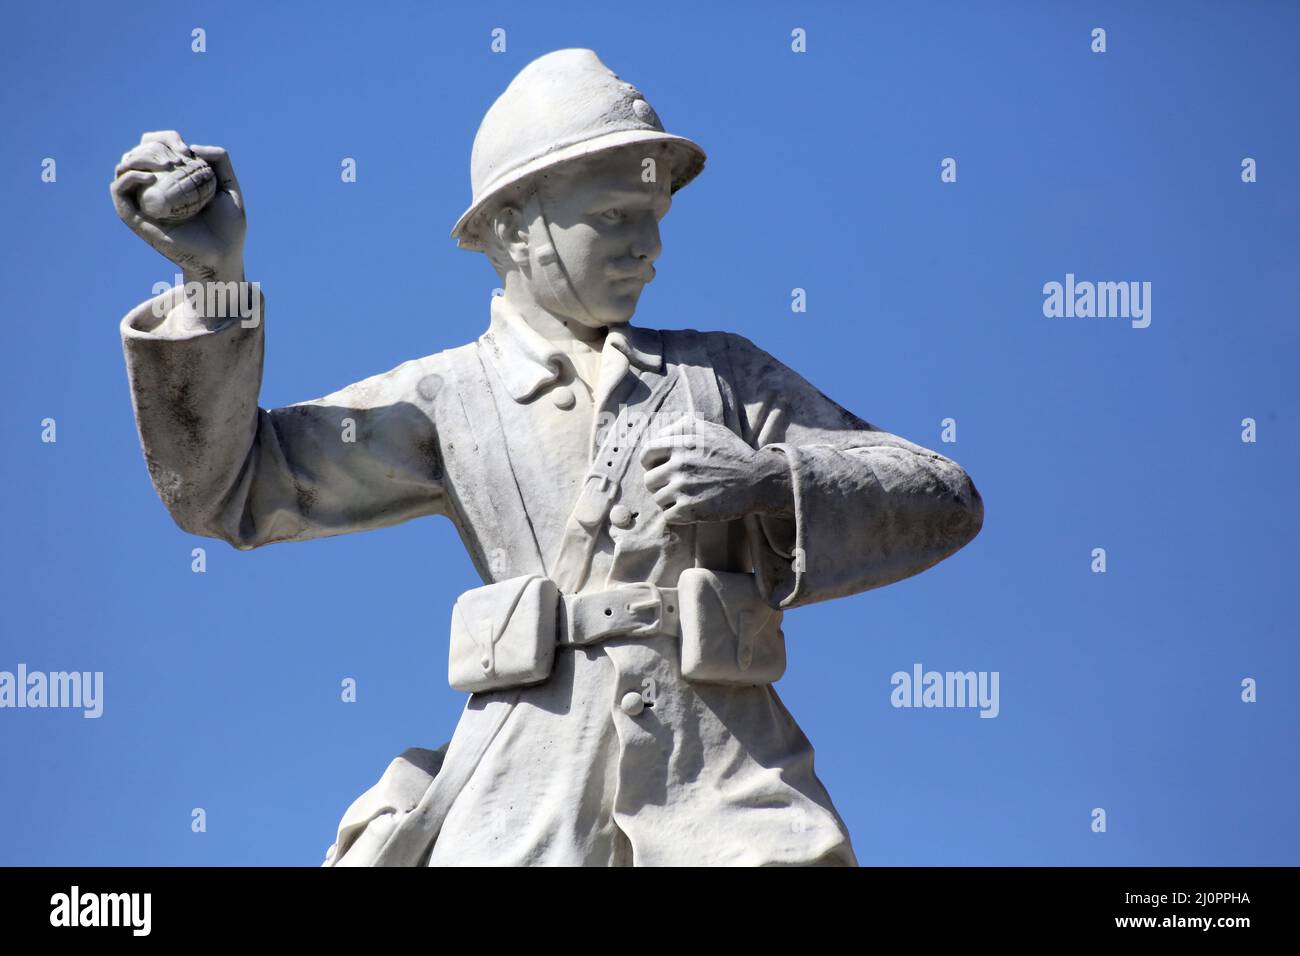 Monument aux morts. Saint-Gervais-les-Bains. Haute-Savoie.  Auvergne-Rhône-Alpes. France Stock Photo - Alamy